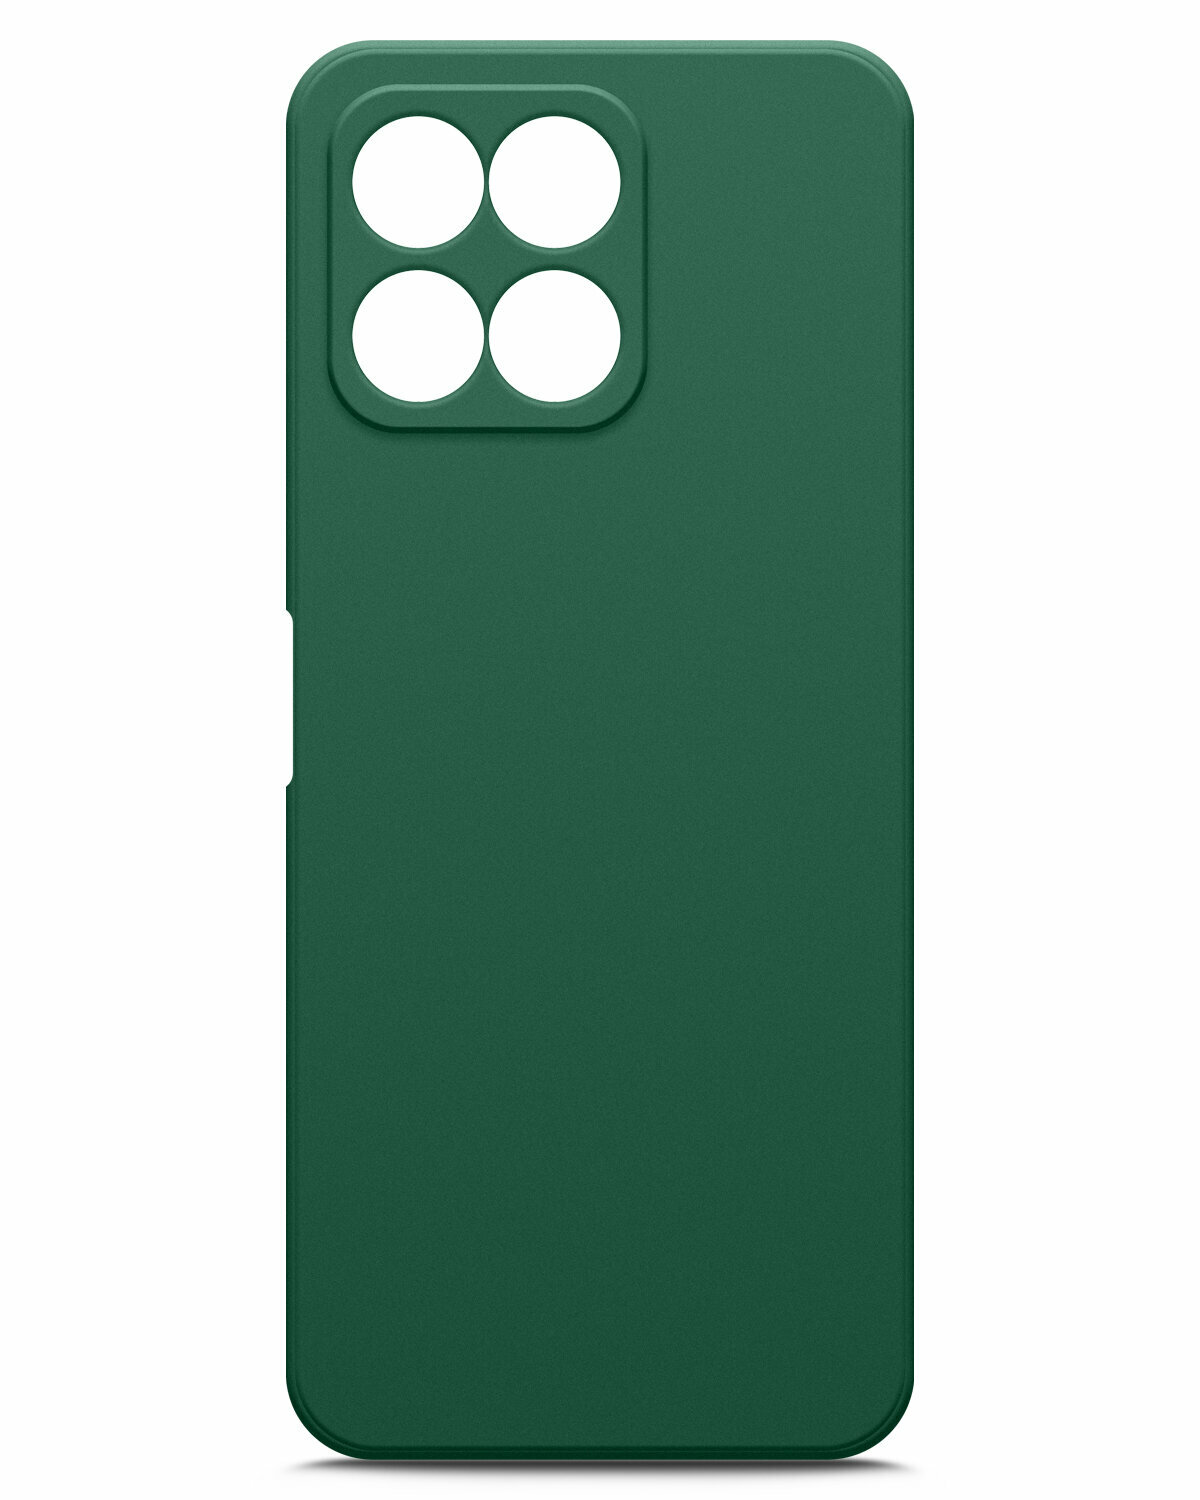 Чехол на Honor X6 (Хонор Х6) зеленый опал силиконовый с защитной подкладкой из микрофибры Microfiber Case, Miuko